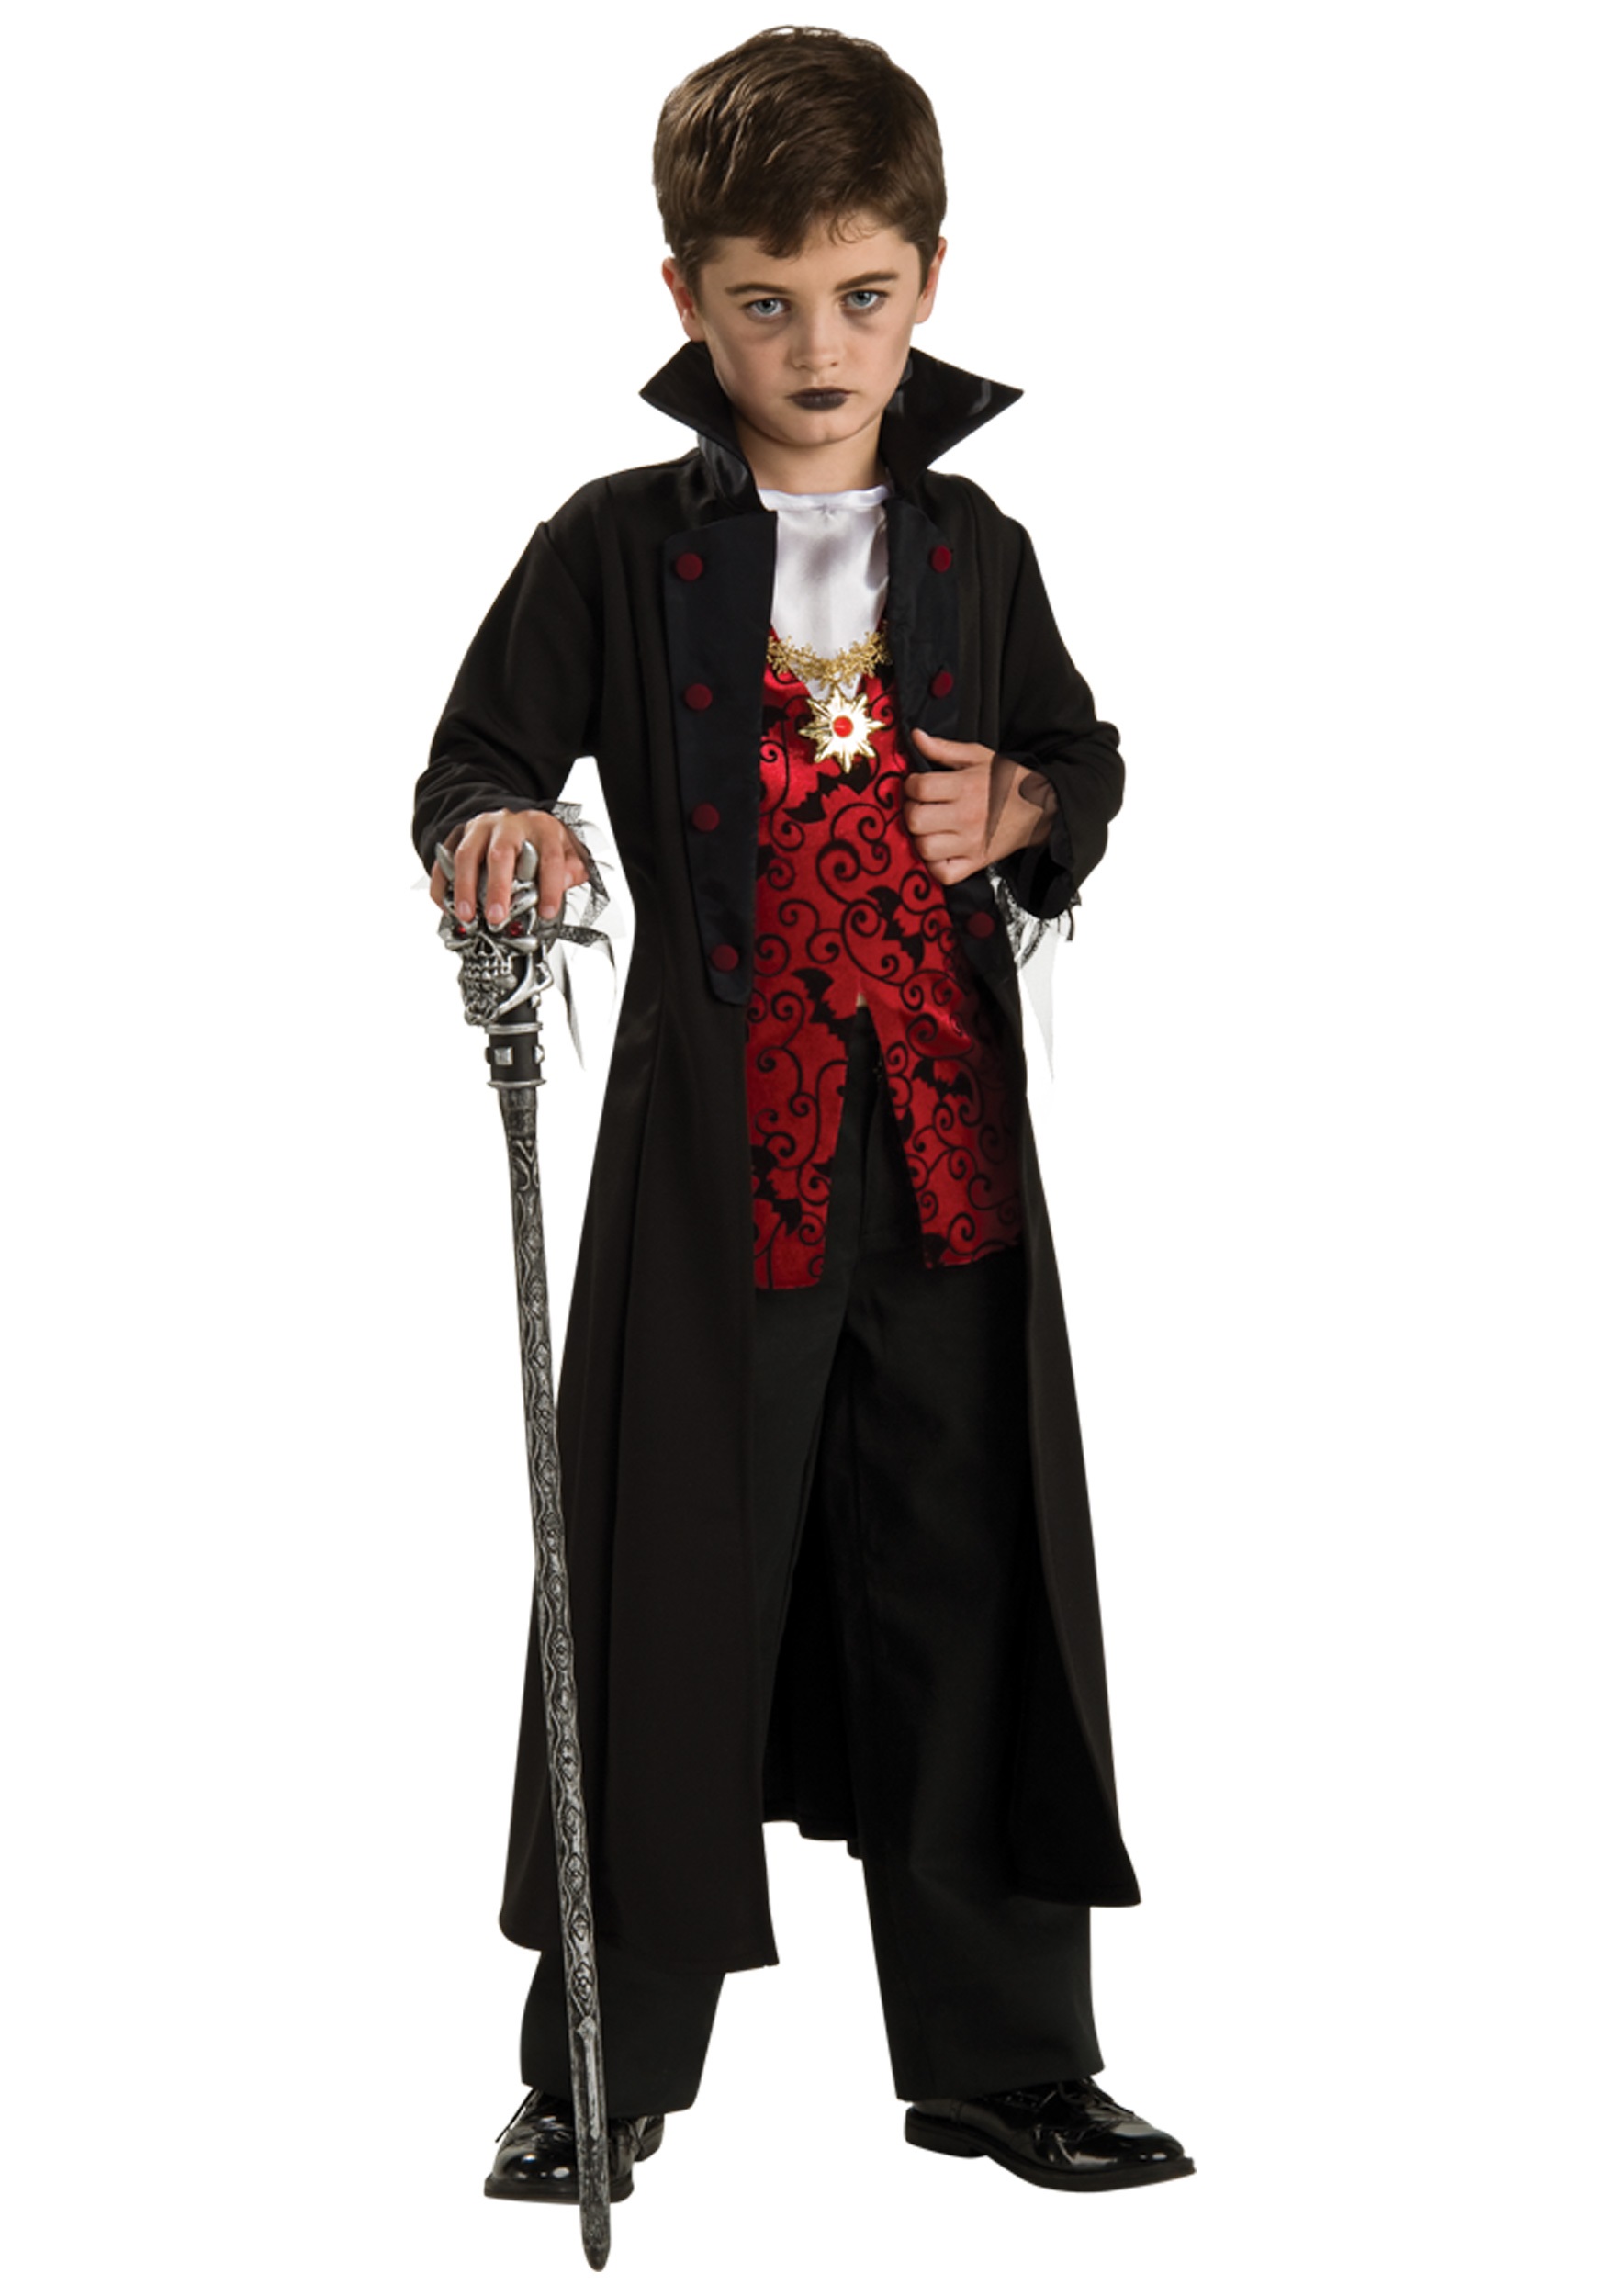 Vampire Dark Lord Costume for Kids